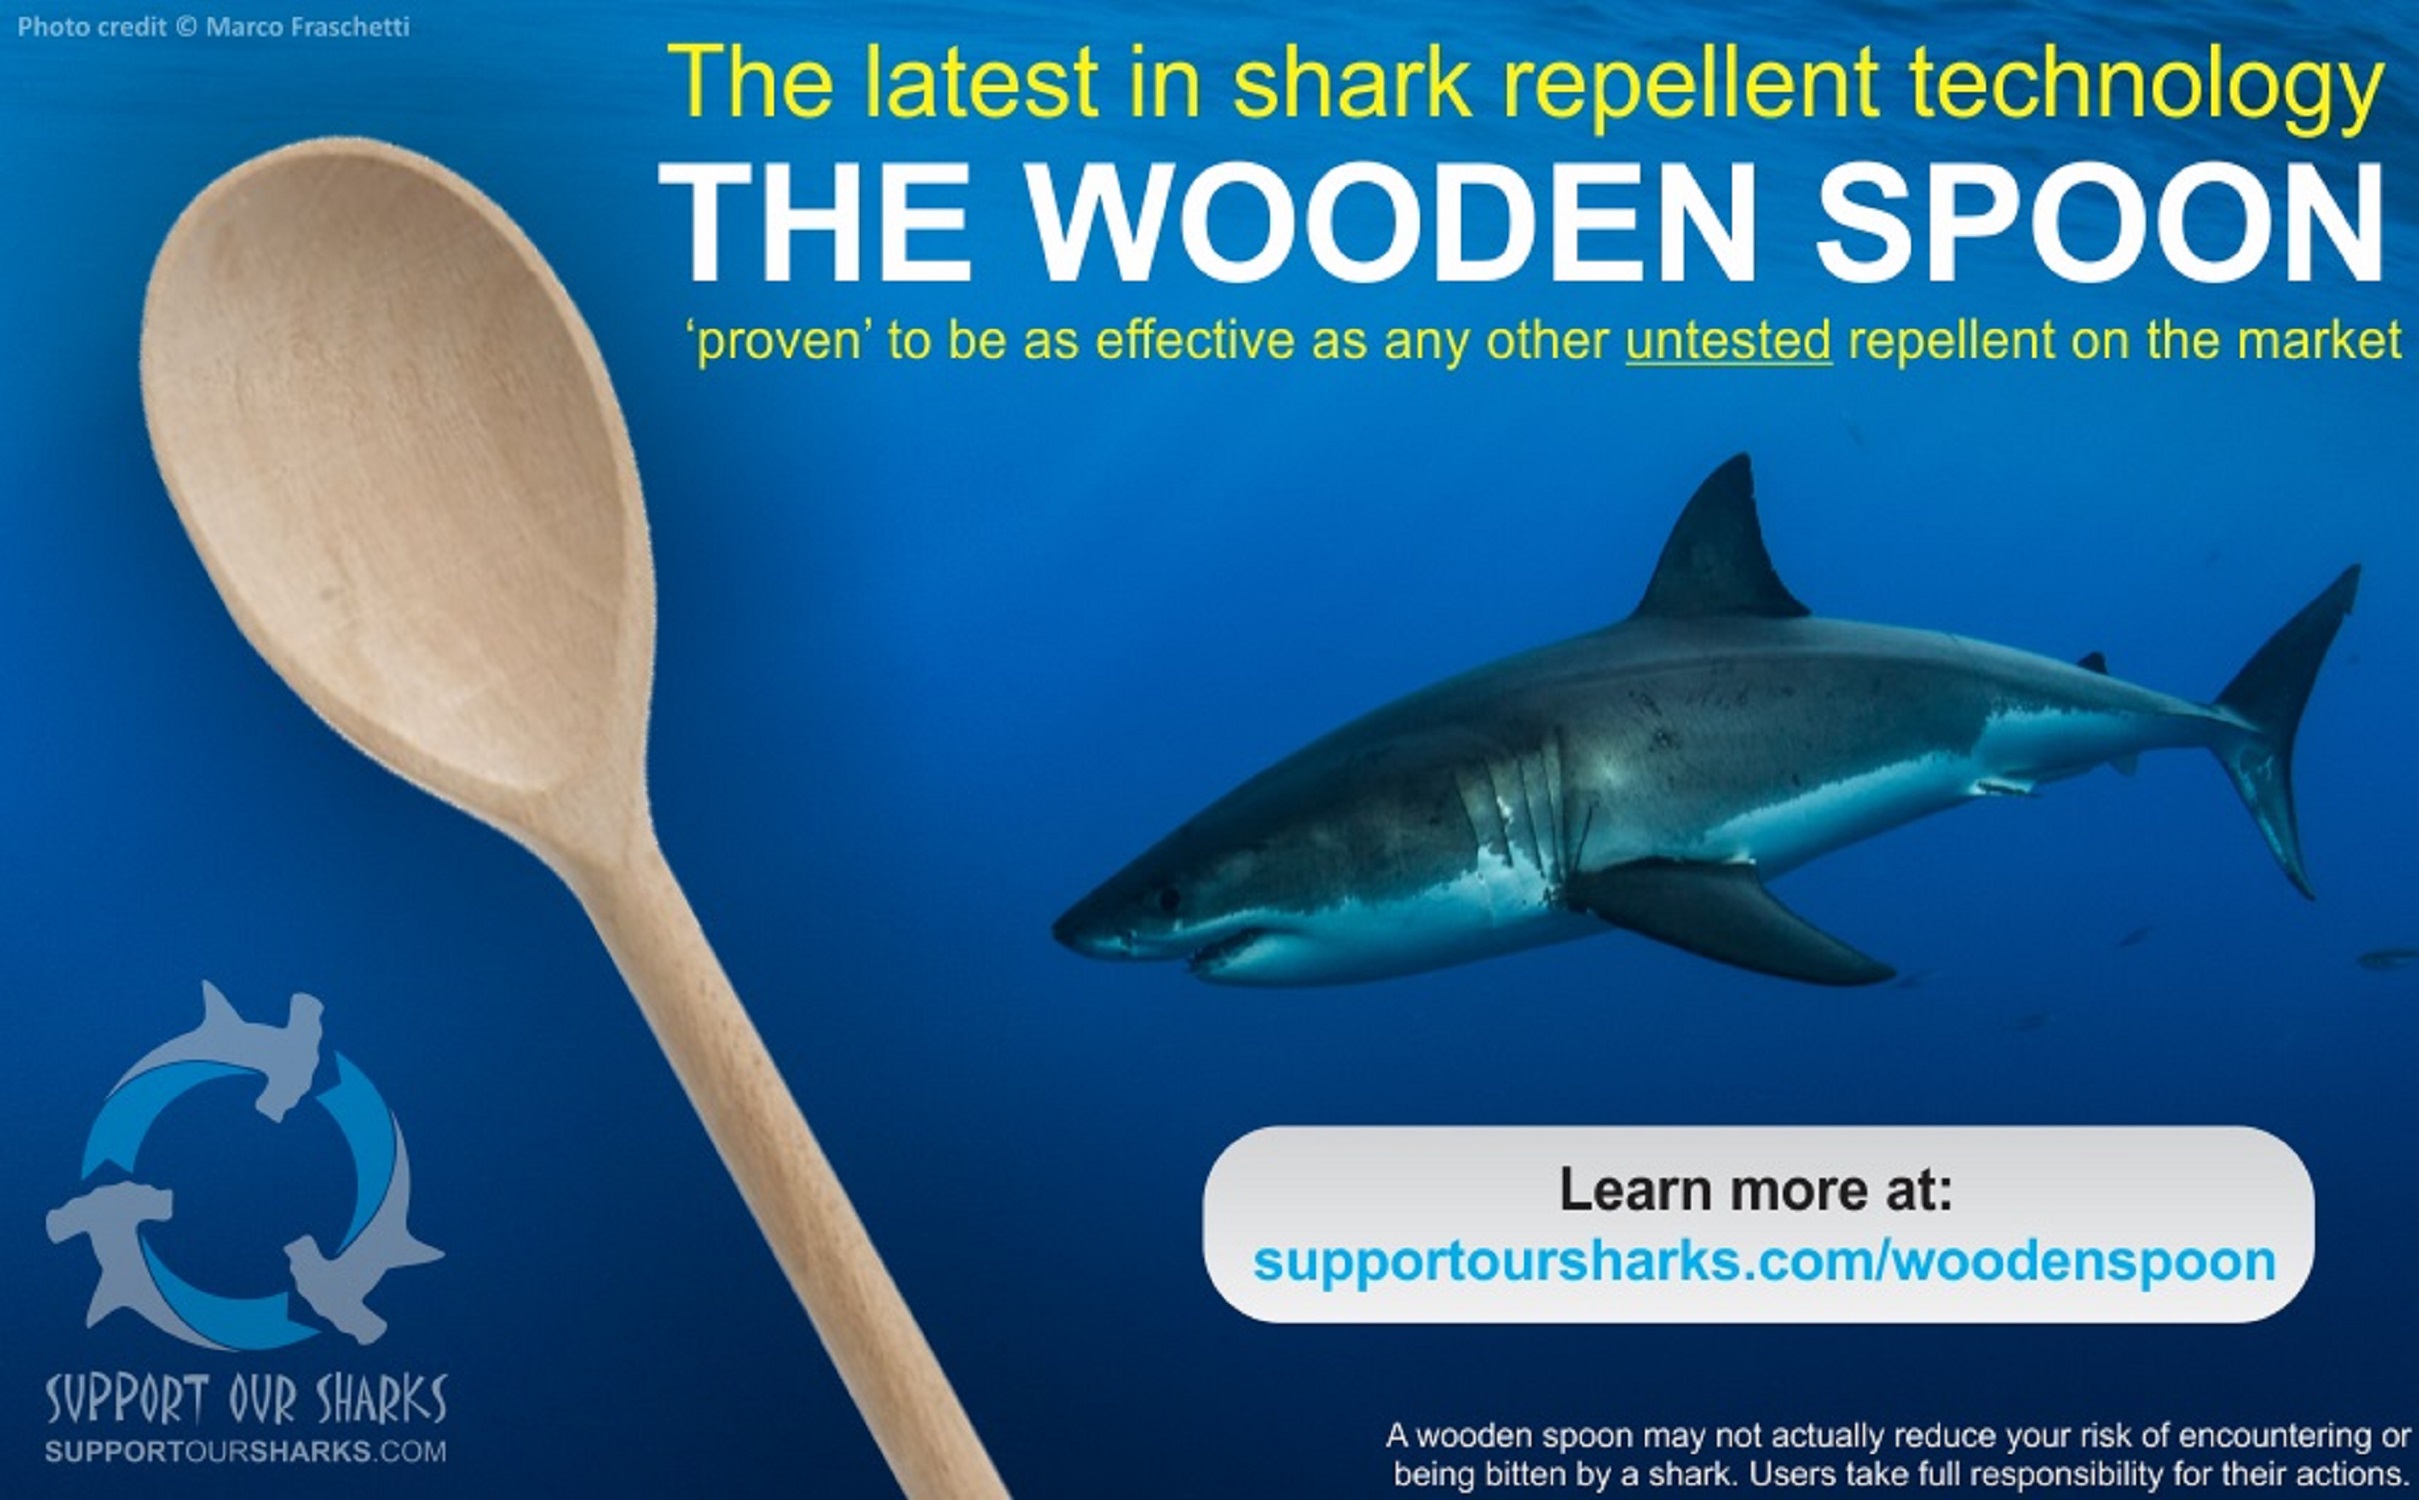 The Wooden Spoon Shark-Repellent